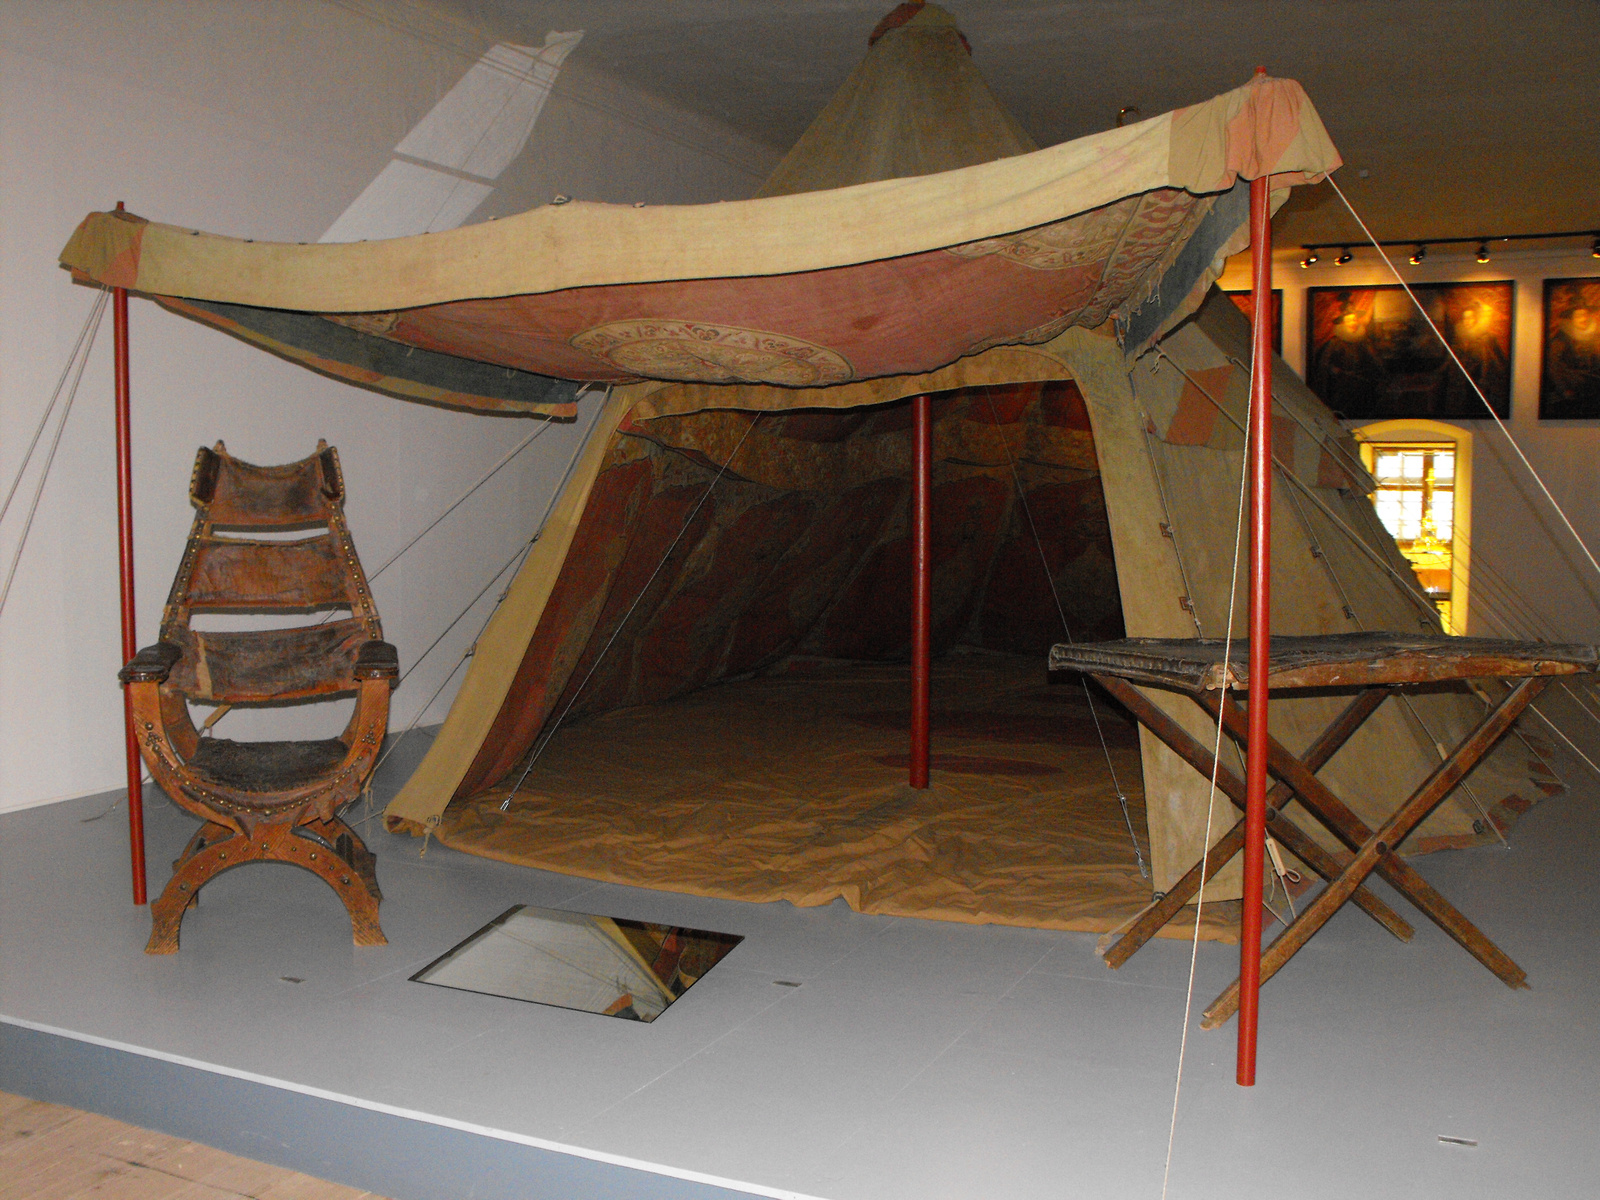 Original török sátor